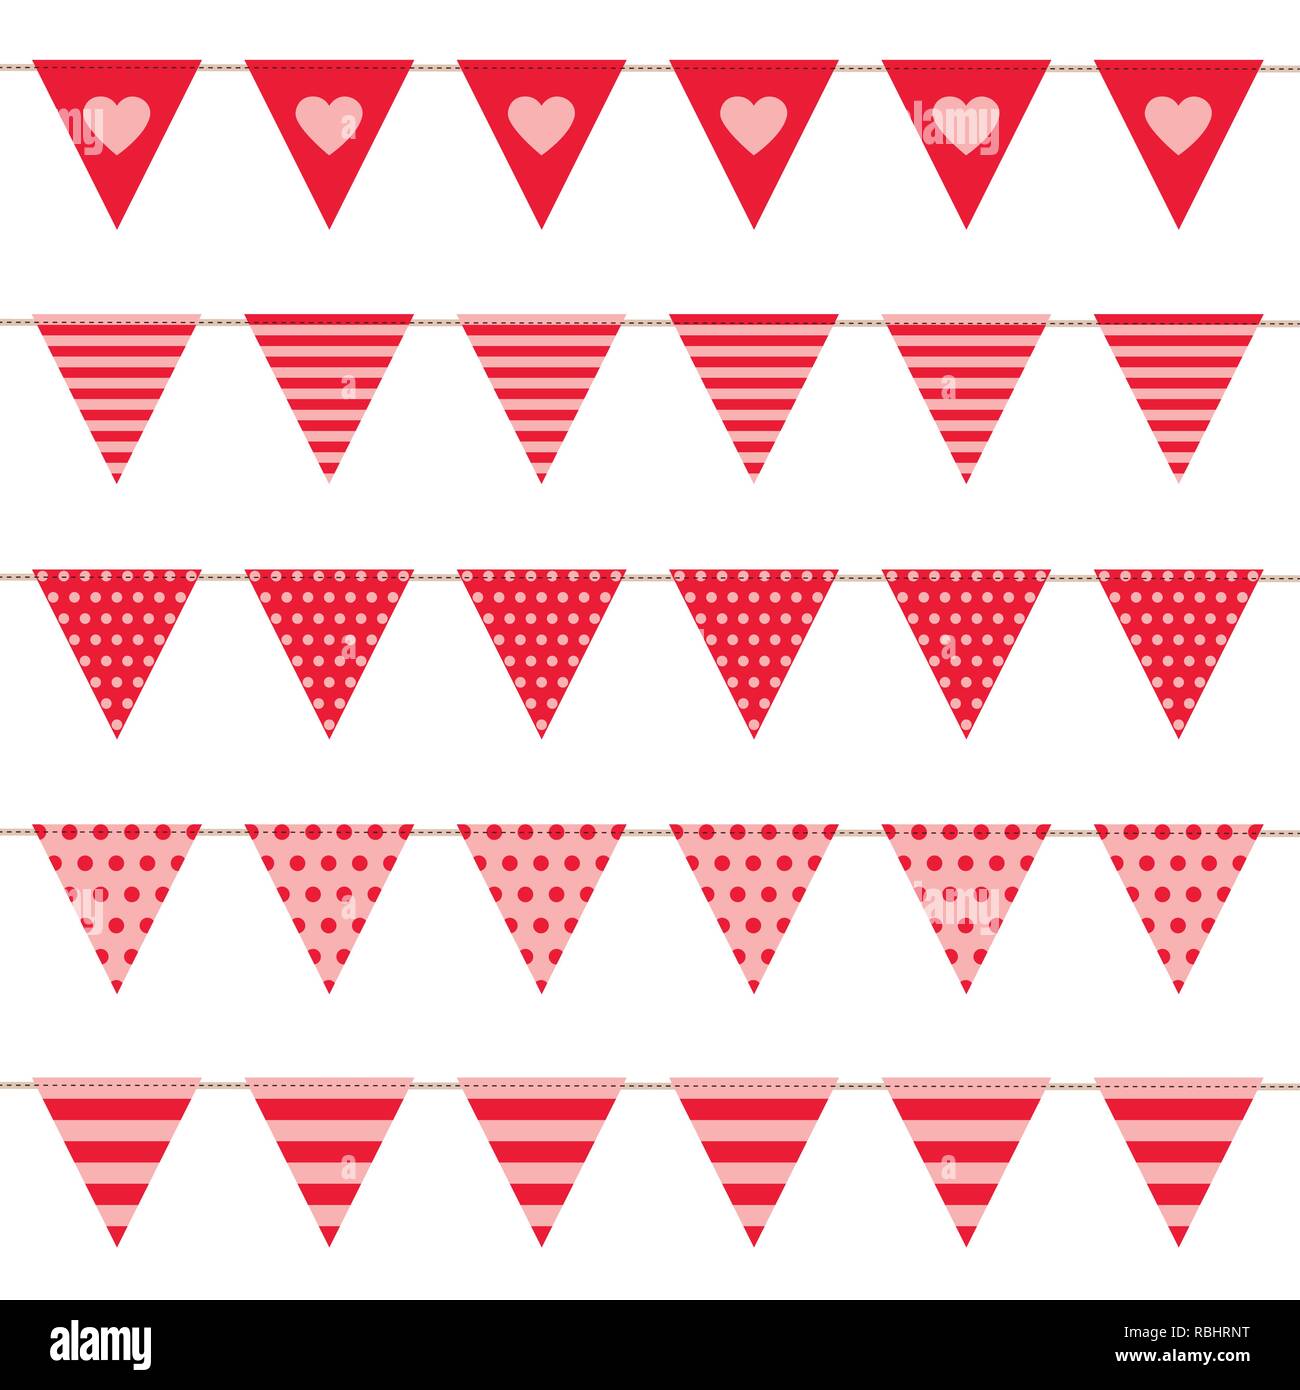 Ensemble de drapeaux de parti rouge avec motif coeur sur fond blanc vector illustration EPS10 Illustration de Vecteur